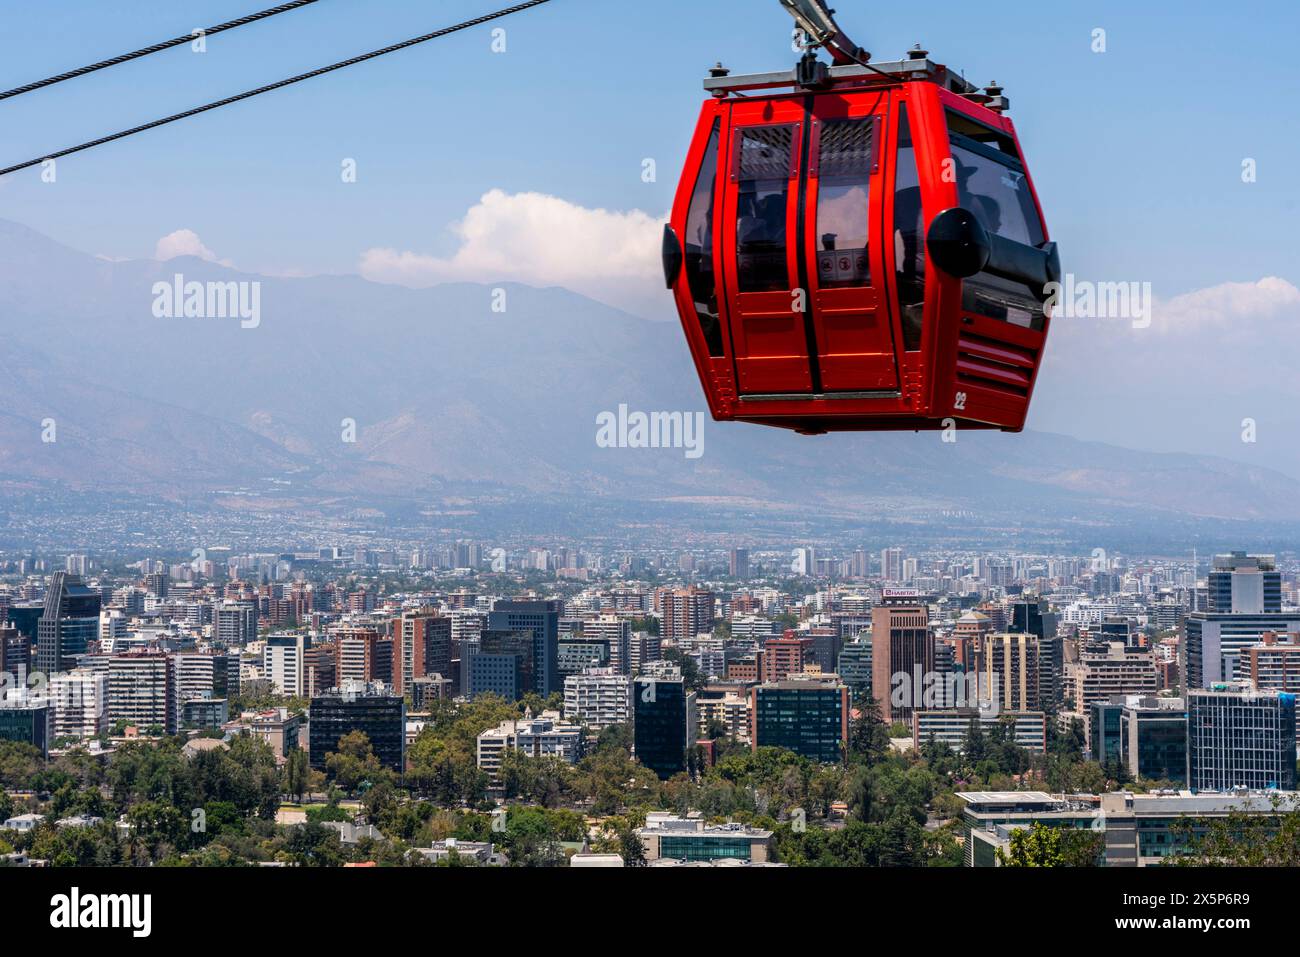 Die Seilbahn Mit Blick Auf Die Stadt, Cerro San Cristobal, Santiago, Chile. Stockfoto